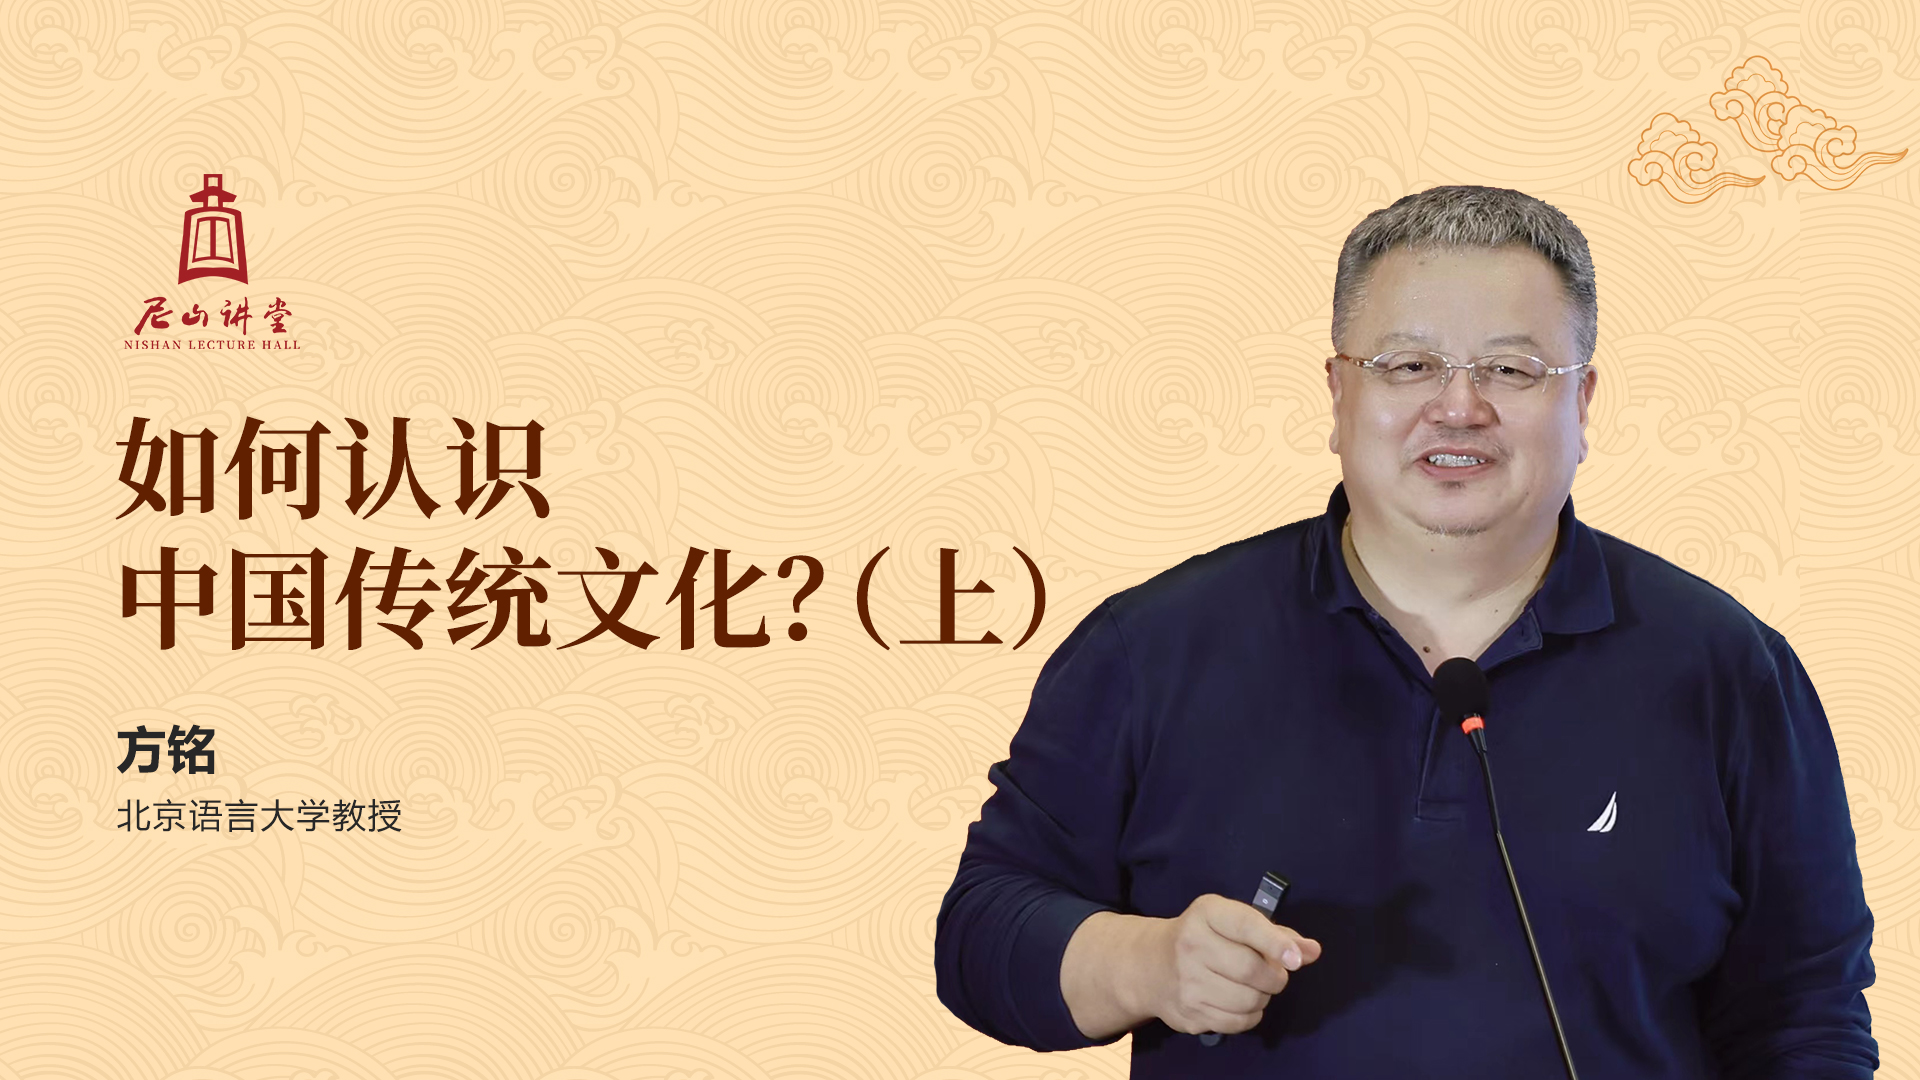 尼山讲堂|方铭:如何认识中国传统文化?(上)